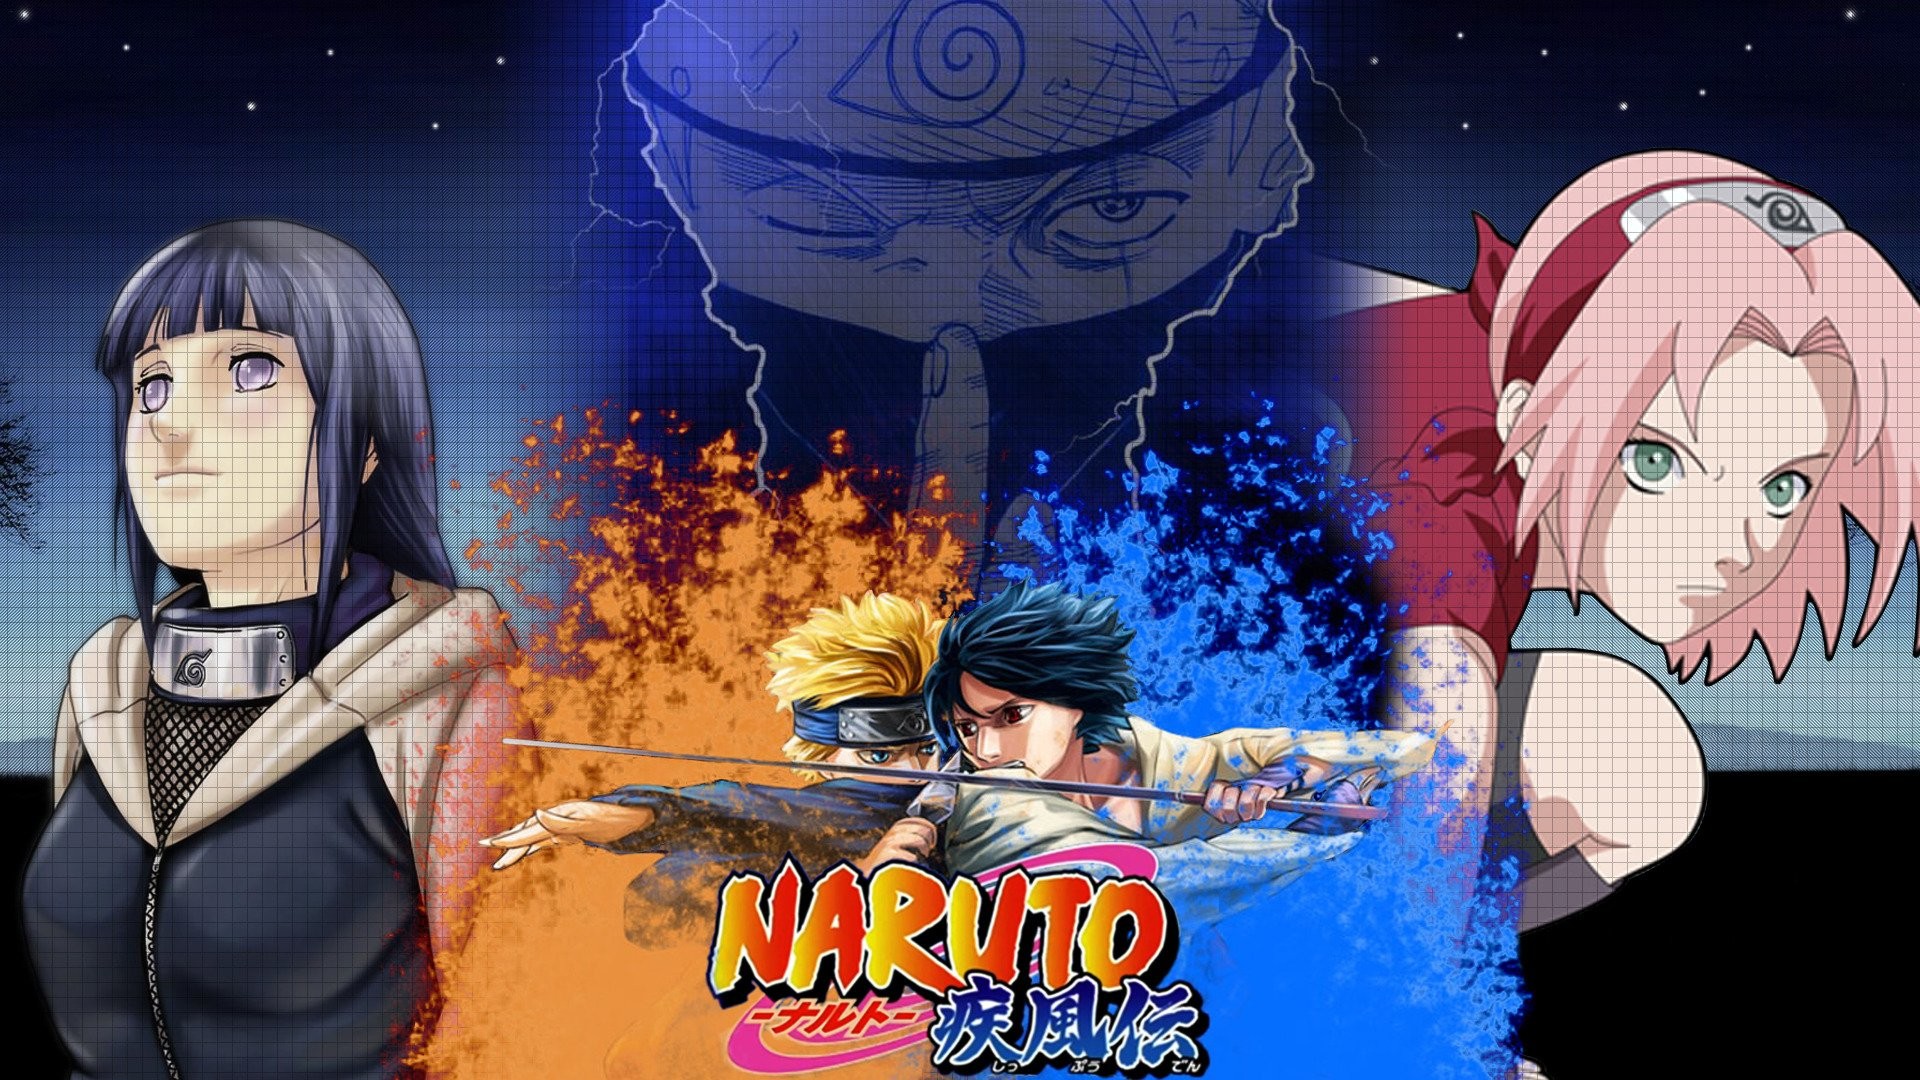 Naruto vs Sasuke là trận chiến kinh điển trong bộ truyện Naruto. Bạn có thể tìm thấy hình nền của trận đấu này và dùng làm hình nền cho điện thoại hoặc máy tính của mình. Hãy cùng chiêm ngưỡng đại chiến giữa Naruto và Sasuke trên hình nền đẹp nhất.